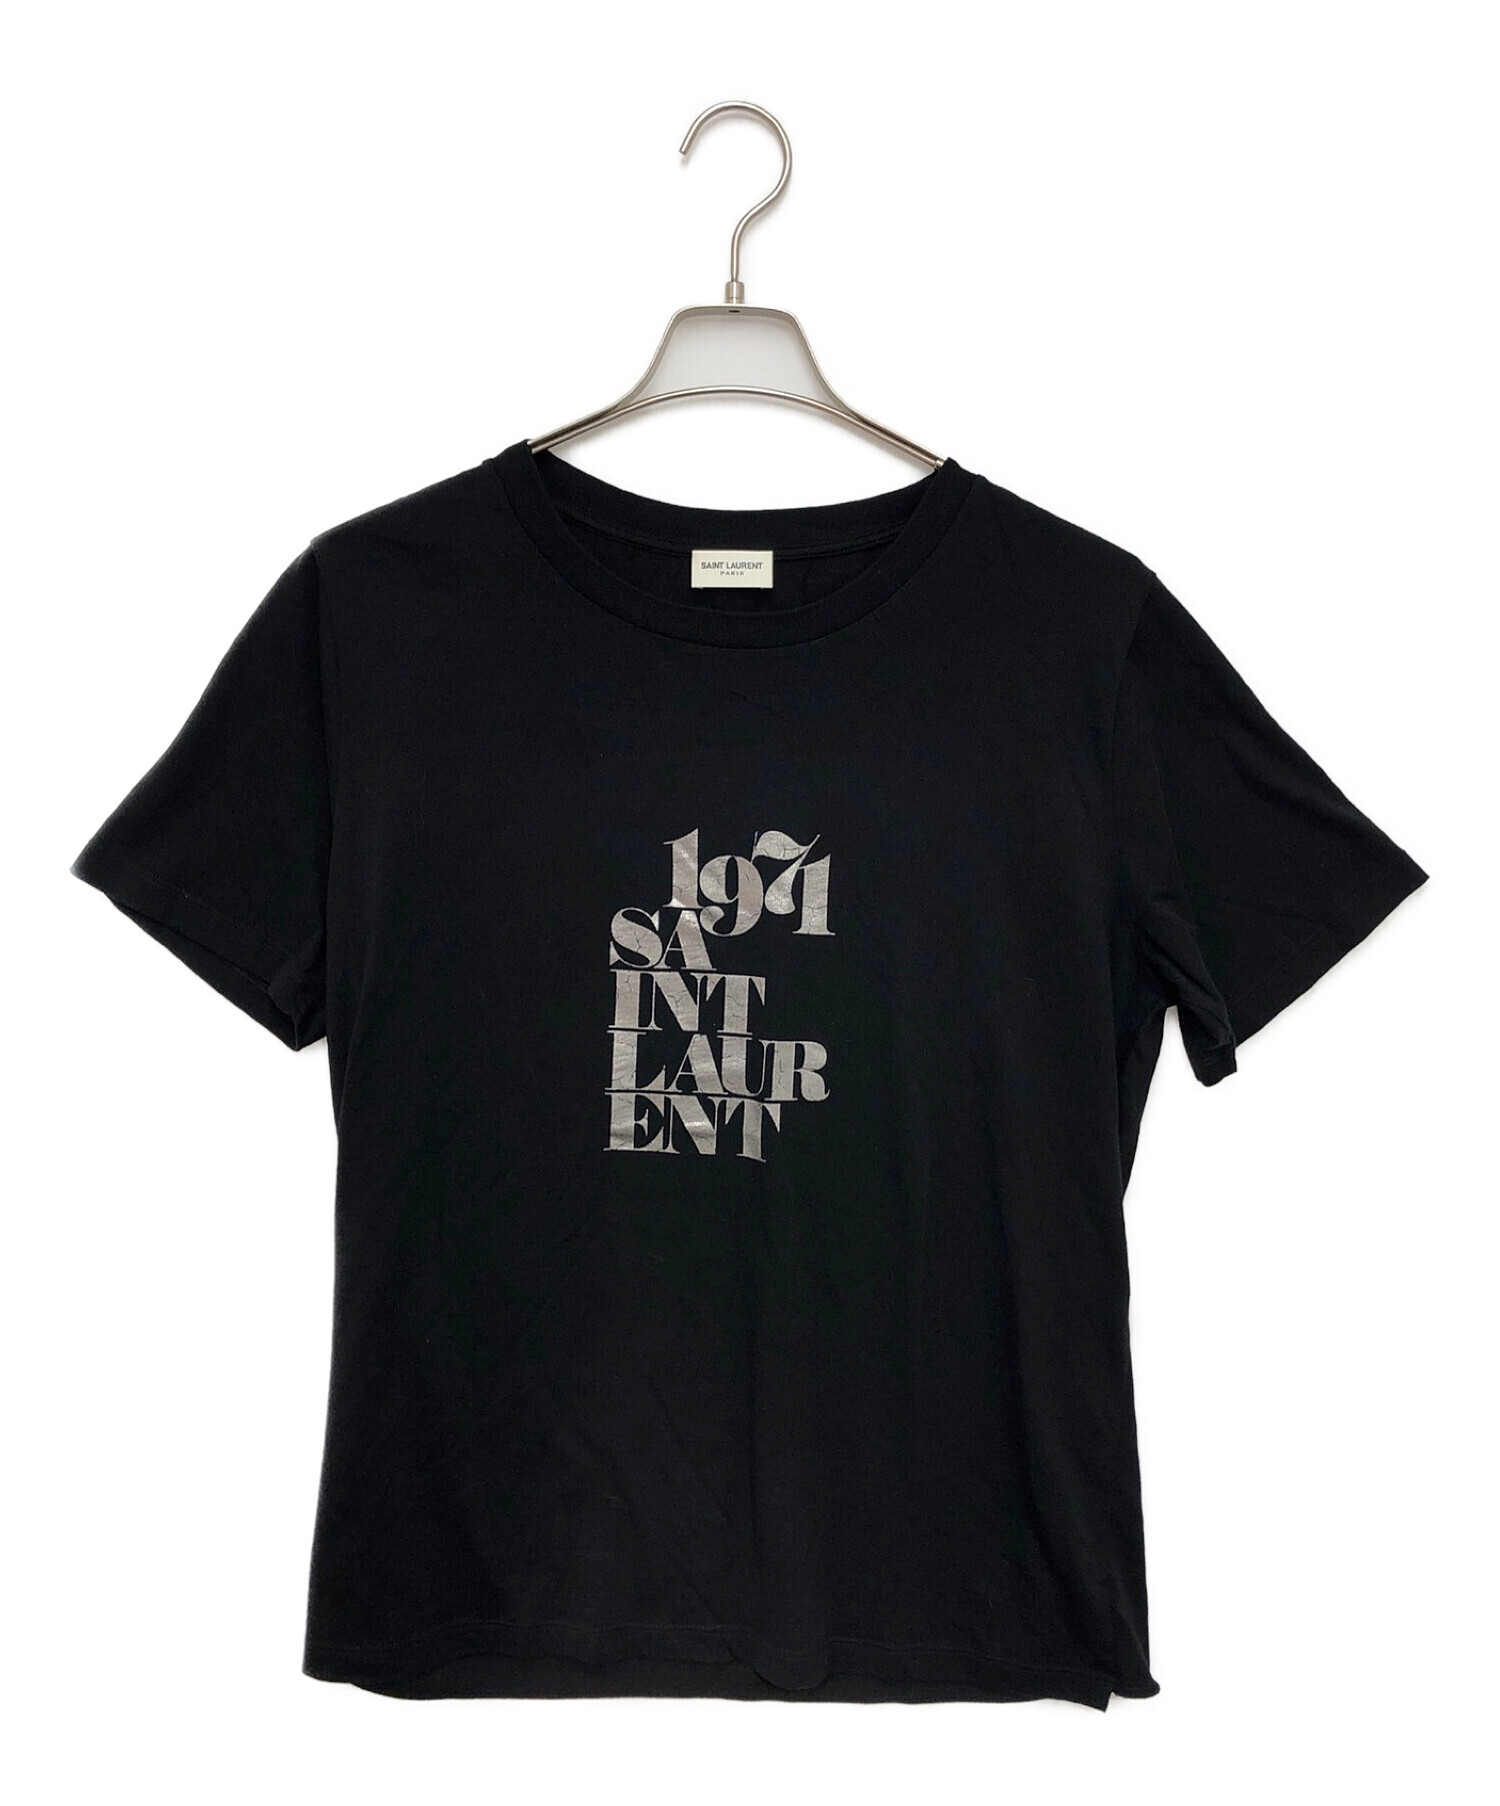 Saint Laurent Paris (サンローランパリ) 半袖Tシャツ ブラック サイズ:M